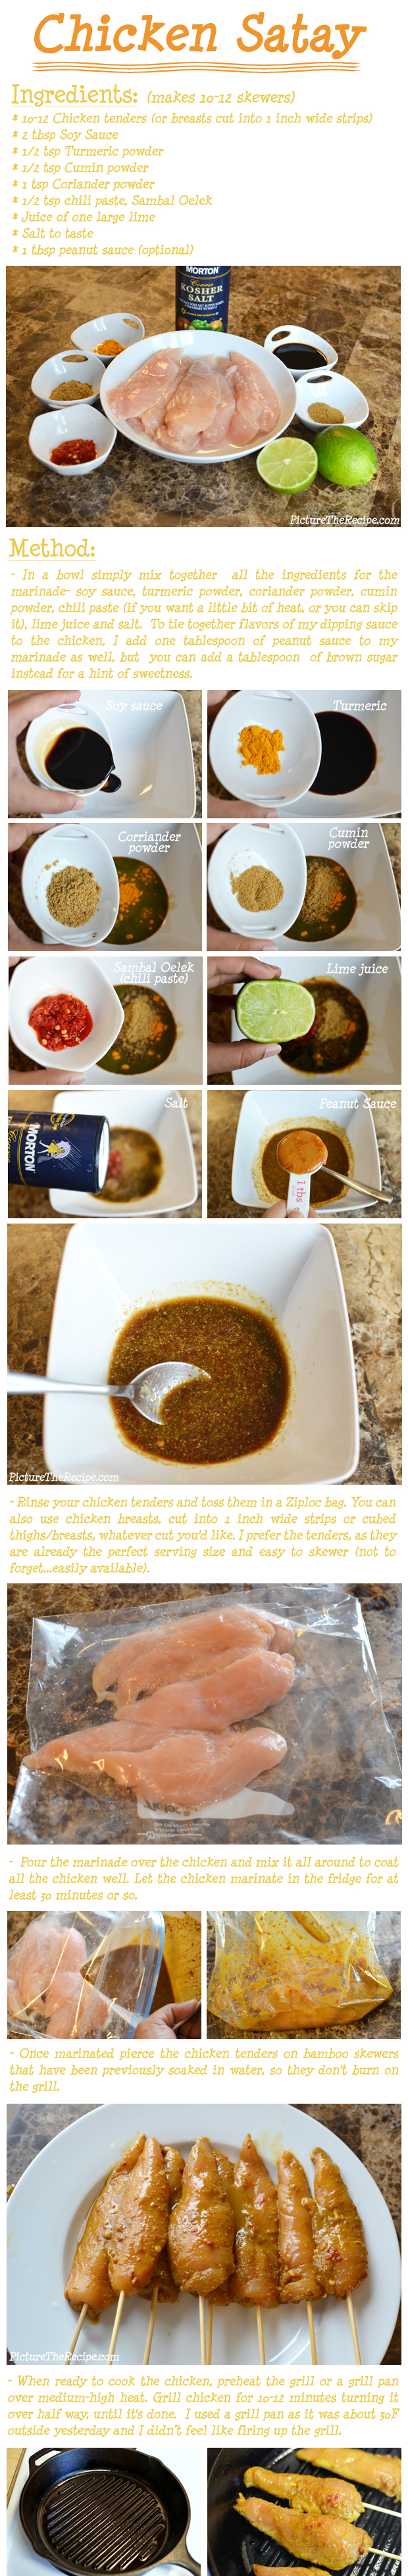 Chicken Satay Recipe - PictureTheRecipe